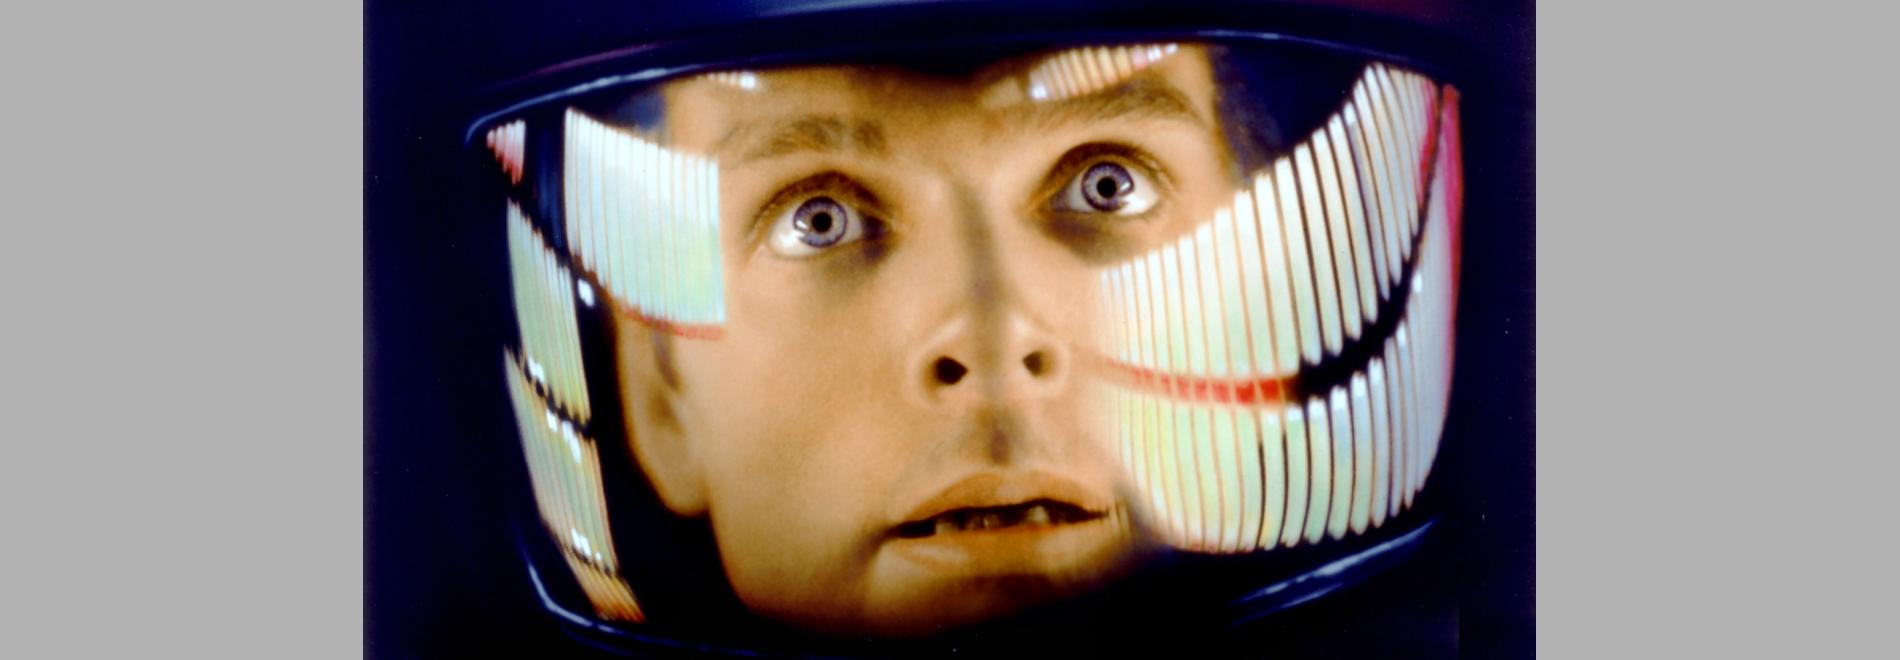 2001: A Space Odyssey / 2001: Una odisea del espacio (Stanley Kubrick, 1968)